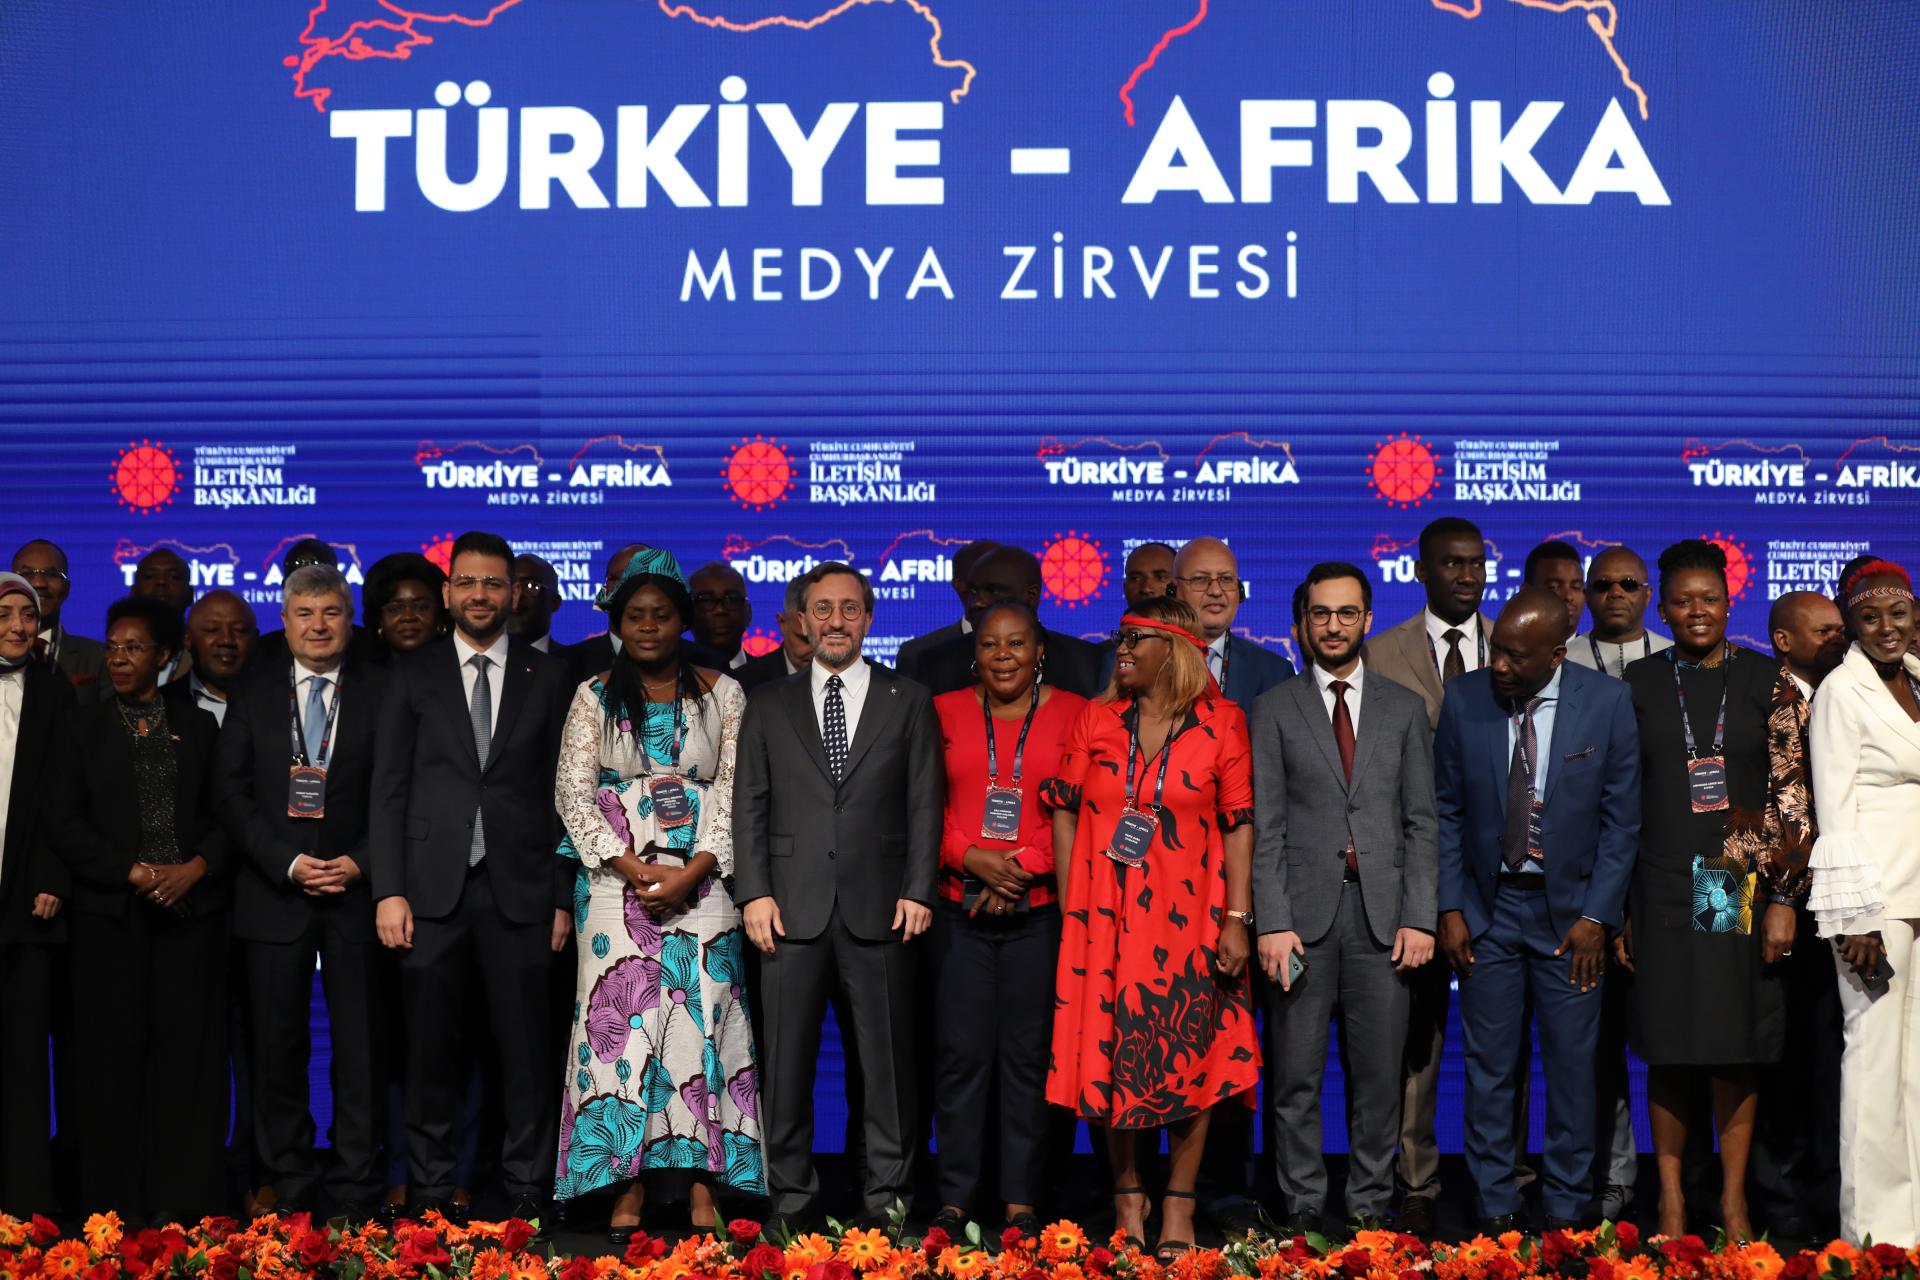 თურქეთ-აფრიკის მედია სამიტი დაიწყო